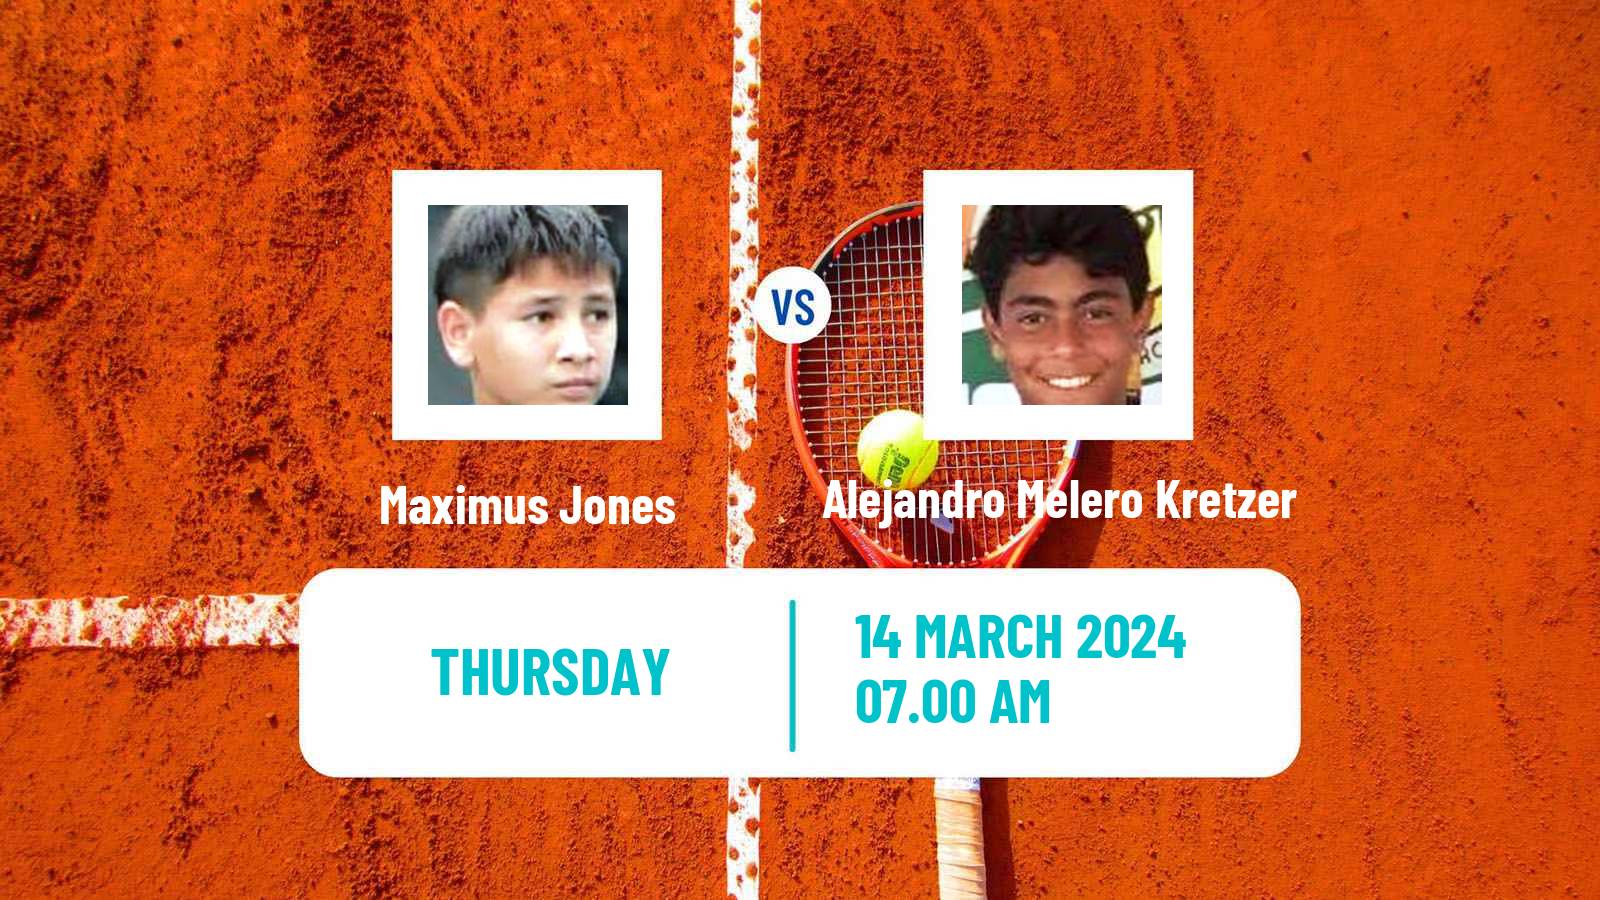 Tennis ITF M15 Les Franqueses Del Valles Men Maximus Jones - Alejandro Melero Kretzer